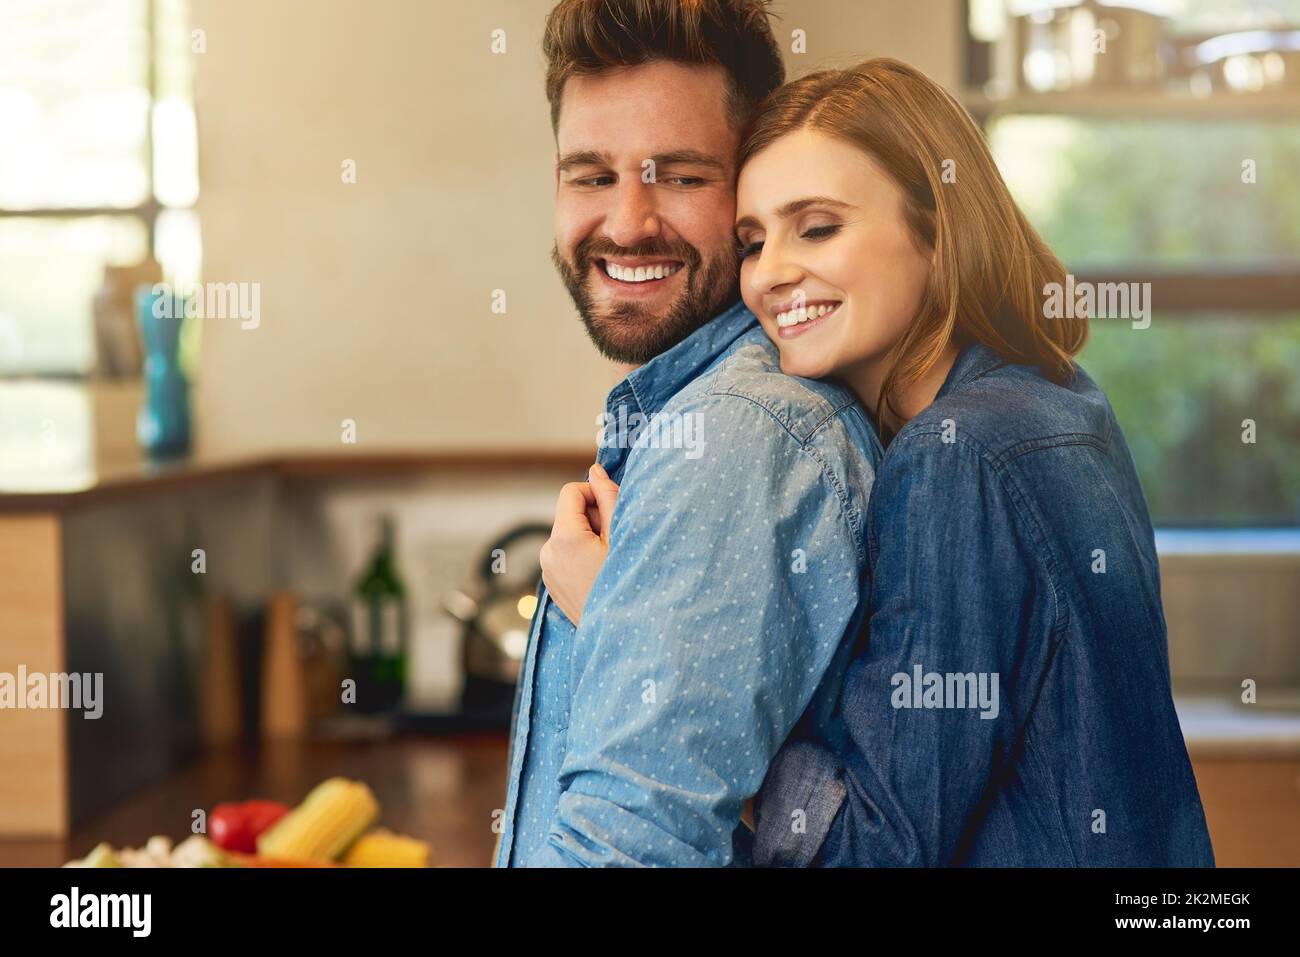 S'il cuisine pour vous, hes un gardien. Photo d'un jeune couple heureux partageant un moment affectueux dans la cuisine à la maison. Banque D'Images